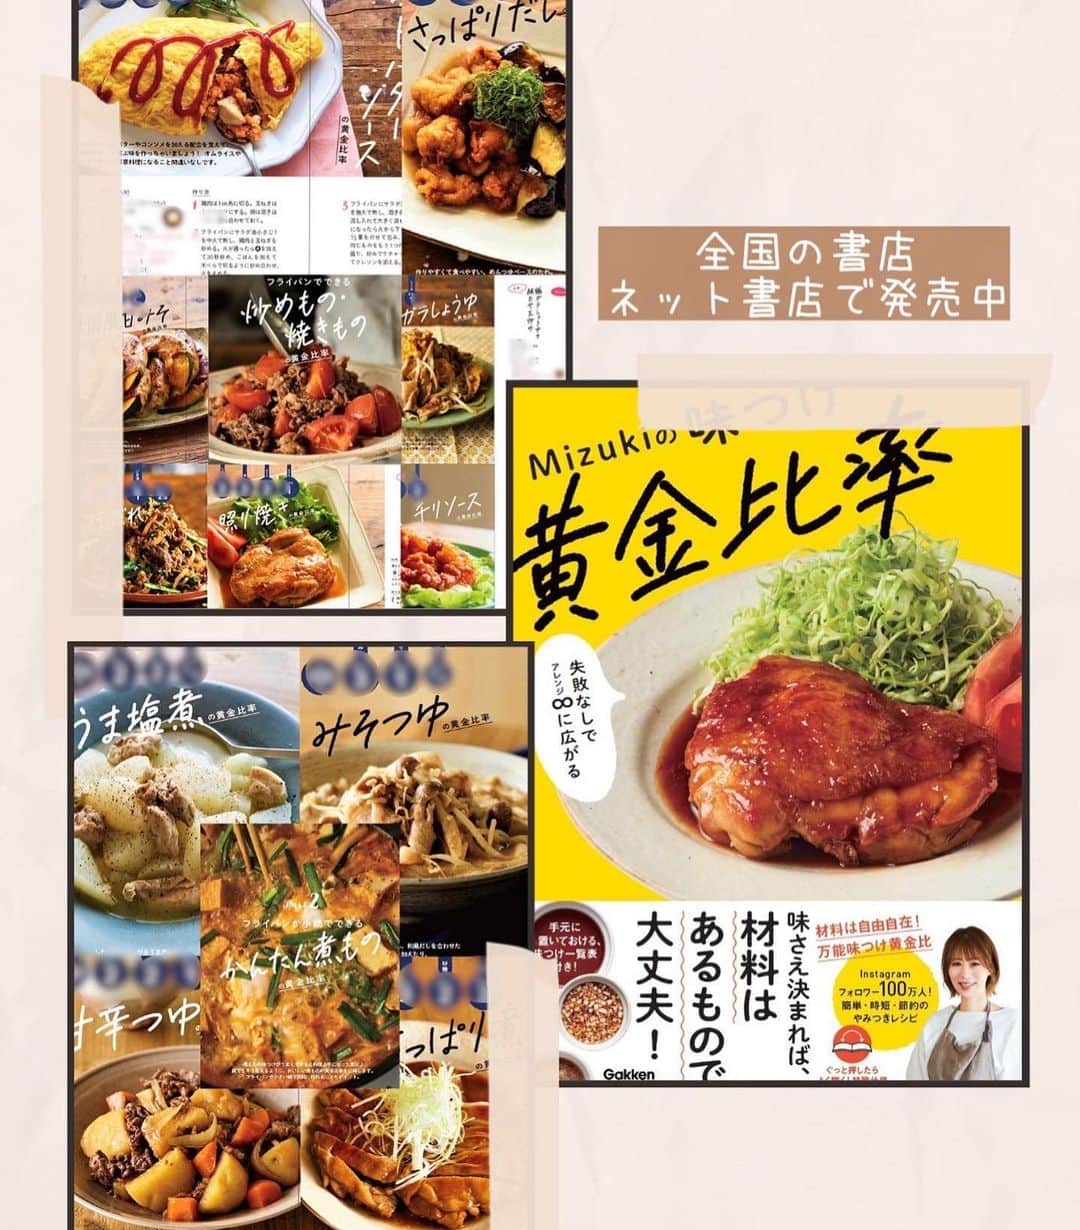 Mizuki【料理ブロガー・簡単レシピ】さんのインスタグラム写真 - (Mizuki【料理ブロガー・簡単レシピ】Instagram)「・一皿で大満足💕 ⁡ ［#レシピ ］ ーーーーーーーーーーーーーーー すぐでき！豚バラナムルごはん (そしてお礼です🙇‍♀️) ーーーーーーーーーーーーーーー ⁡ ⁡ ⁡ おはようございます☺️ ⁡ 今日ご紹介させていただくのは ささっとできる丼レシピ🍚 \ 豚バラナムルごはん /  (再掲載✨) ⁡ お手軽な豚バラ、小松菜、人参を ナムル風に炒めてごはんにON💕 この一皿でお肉も野菜も バランスよく食べられますよ〜😋 お好みで卵をからめて召し上がれ✨ ⁡ フライパンひとつでできるので お気軽にお試し下さいね🍳 ⁡ ⁡ ⁡ 💬💬💬 謎の暮らしアカウント作りました🏠 変なライブはこっちでやってます🤫 →(@mizuki_kurashi ) ⁡ ⁡ 【簡単・時短・節約レシピ更新中🔻】 @mizuki_31cafe ⁡ ⁡ ⁡ ＿＿＿＿＿＿＿＿＿＿＿＿＿＿＿＿＿＿＿ 【2人分】 豚バラ薄切り肉...150g 小松菜...1/2束(100g) 人参...1/3本 ごま油...大1 ●醤油・みりん...各大1 ●鶏がらスープ...小1/2 ●にんにくチューブ...3cm ごはん・卵黄・ごま...各適量 ⁡ 1.豚肉と小松菜は4cm長さに切る。人参は細切りにする。●は合わせておく。 2.フライパンにごま油を中火で熱し、豚肉と人参を炒める。豚肉の色が変わったら小松菜も加えて炒め、しんなりしたら●を加えて煮からめる。 3.器にごはんを盛って2をのせ、卵黄とごまをトッピングする。 ￣￣￣￣￣￣￣￣￣￣￣￣￣￣￣￣￣￣￣ ⁡ ⁡ 《ポイント》 ♦︎豚こまで作っても♩ ♦︎野菜もアレンジOK♩もやし、きのこ、ニラ、ピーマンなども合いますよ♩ ⁡ ⁡ ⁡ ⁡ ⁡ ⁡ 💬💬💬 たくさんの温かいコメントを 本当にありがとうございました😭 ちょっともう涙なしでは読めない状況で (有難い意味で)メンタルにきています。涙 ⁡ 読んでは泣きを繰り返している結果 まだ半分もお返事できておりませんが どうか気長にお待ちいただけますと幸いです🙇‍♀️ ⁡ そしてこんな時に限って激務••• (仕事量が意味不明) という状況が続いておりますので 先に口頭でお礼をお伝えしたいと思います🙇‍♀️ 来週どこかでライブ配信させてください。 (平然を装う自信がありませんので 謎のアカウント(@mizuki_kurashi )で😅) ⁡ 改めてみなさんとの繋がりに感謝して これからもコツコツやっていきたいと思います。 この度は本当にありがとうございました。涙 ⁡ ⁡ ⁡ ⁡ ⁡ ⁡ ⁡ 𖤣𖥧𖥣𖡡𖥧𖤣✨ 愛用している調理器具や器などは #楽天ROOMに載せてます ‎𐩢𐩺 (ハイライトから飛べます🛍) ⁡ ⁡ ⁡ ⁡ ⁡ ⁡ ⁡ 🔶全国の書店・ネット書店で発売中🔶 ⁡ ✼••┈┈┈┈┈••✼••┈┈┈┈┈••✼ 今日のごはんこれに決まり！ ‎𓊆#Mizukiのレシピノート 500品𓊇 ✼••┈┈┈┈┈••✼••┈┈┈┈┈••✼ ⁡ ˗ˏˋ おかげさまで25万部突破 ˎˊ˗ 料理レシピ本大賞準大賞を受賞しました🙇‍♀️ ⁡ 6000点の中からレシピを厳選し まさかの【500レシピ掲載】❣️ 肉や魚のメインおかずはもちろん 副菜、丼、麺、スープ、お菓子 ハレの日のレシピ、鍋のレシピまで 全てこの一冊で完結𓌉◯𓇋✨ ⁡ ⁡ ⁡ ✼••┈┈┈••✼••┈┈┈••✼ Mizukiのカンタン手作り   𓊆 #3時のおやつ 𓊇 ✼••┈┈┈••✼••┈┈┈••✼ ⁡ 『3分クッキング』で連載中の 「Mizukiのカンタン手作り」 ‎4年分のおやつが1冊になりました！ ❝オーブンなしで❞ 身近な材料と道具でできる 簡単、手軽なおやつを80品🍪 ⁡ ⁡ ⁡ ⁡ ⁡ #豚バラナムルごはんm #豚肉 #ナムル #小松菜レシピ #豚肉レシピ  #豚バラ  #丼 #ランチ #お弁当 #お弁当おかず #節約料理 #簡単料理  #時短料理 #料理 #mizukiレシピ  #アルモンデ #時短レシピ #節約レシピ #簡単レシピ」5月13日 7時35分 - mizuki_31cafe